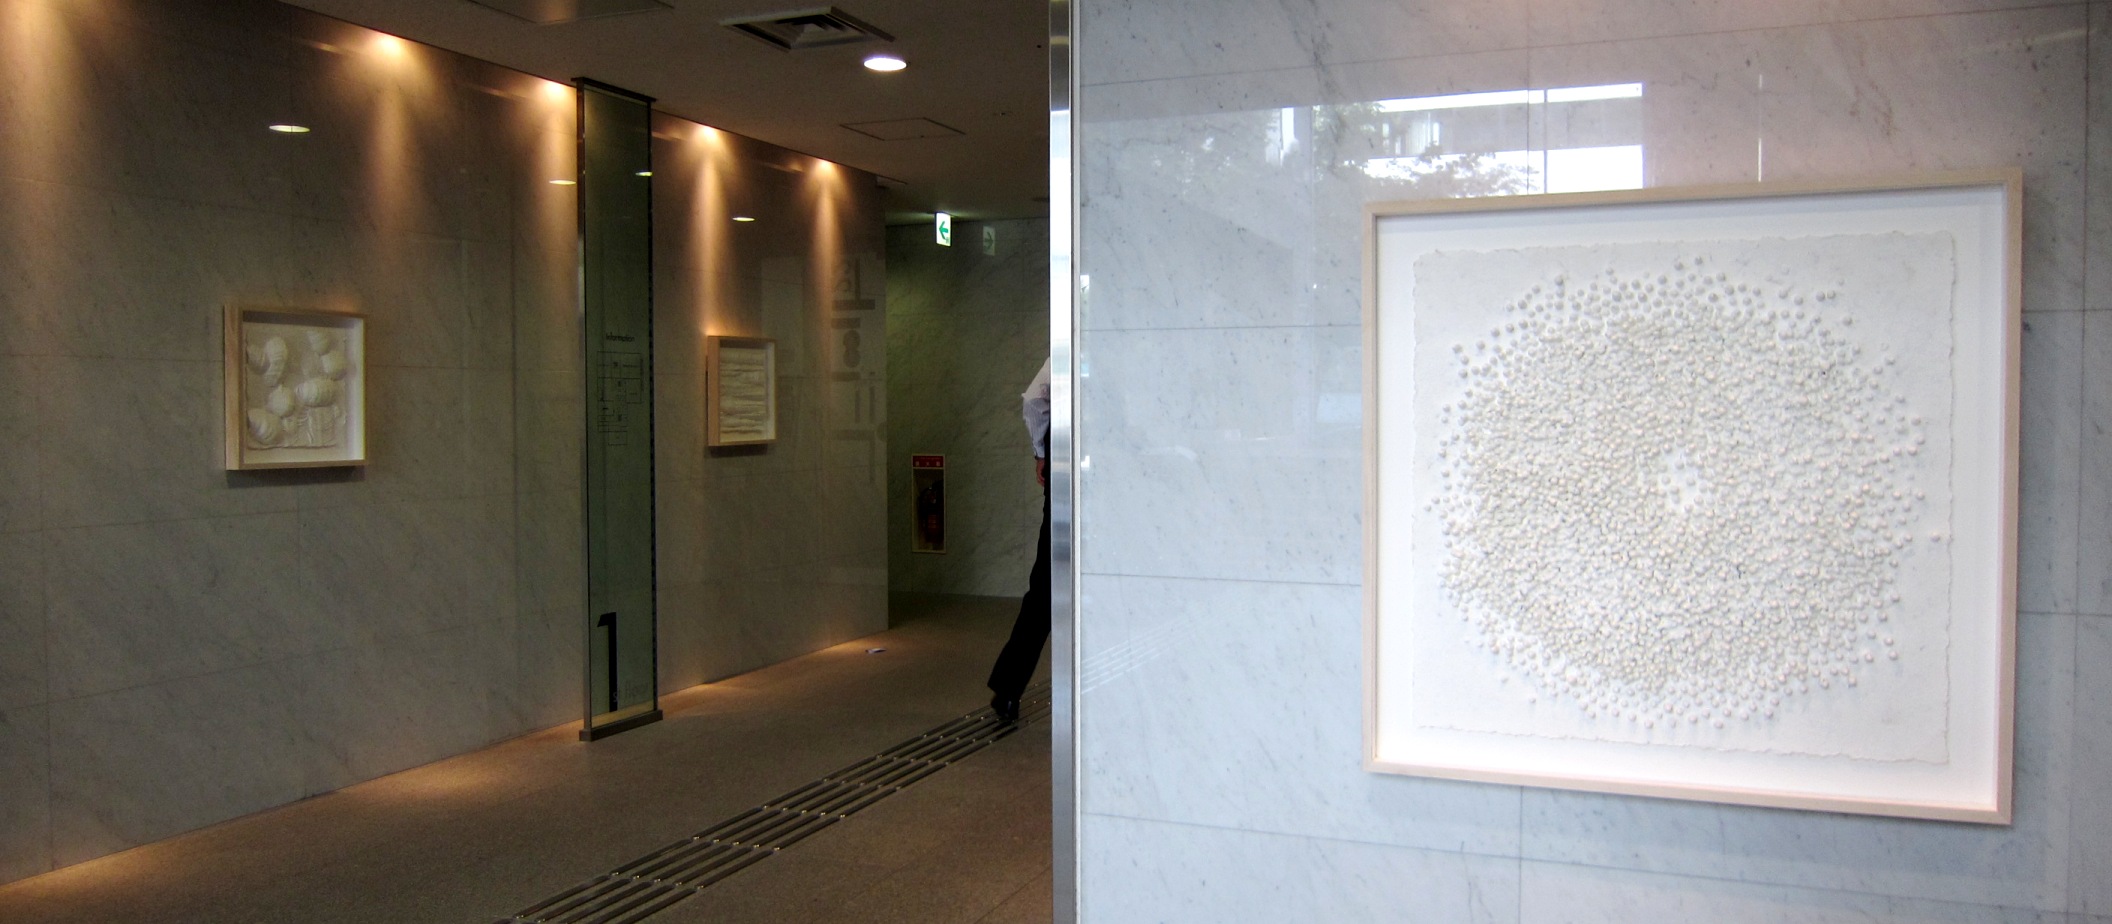 2115)「加藤宏子 彫刻展」 STVｴﾝﾄﾗﾝｽ　7月22日（月）～8月11日（日）_f0126829_1723572.jpg